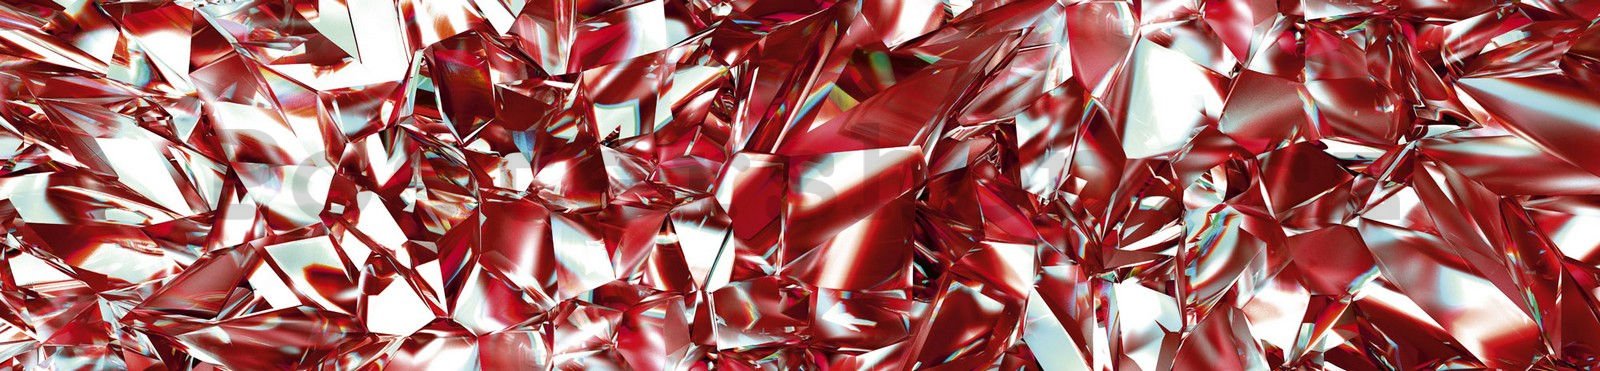 Samolepící omyvatelná tapeta za kuchyňskou linku - Červené krystaly, 260x60 cm